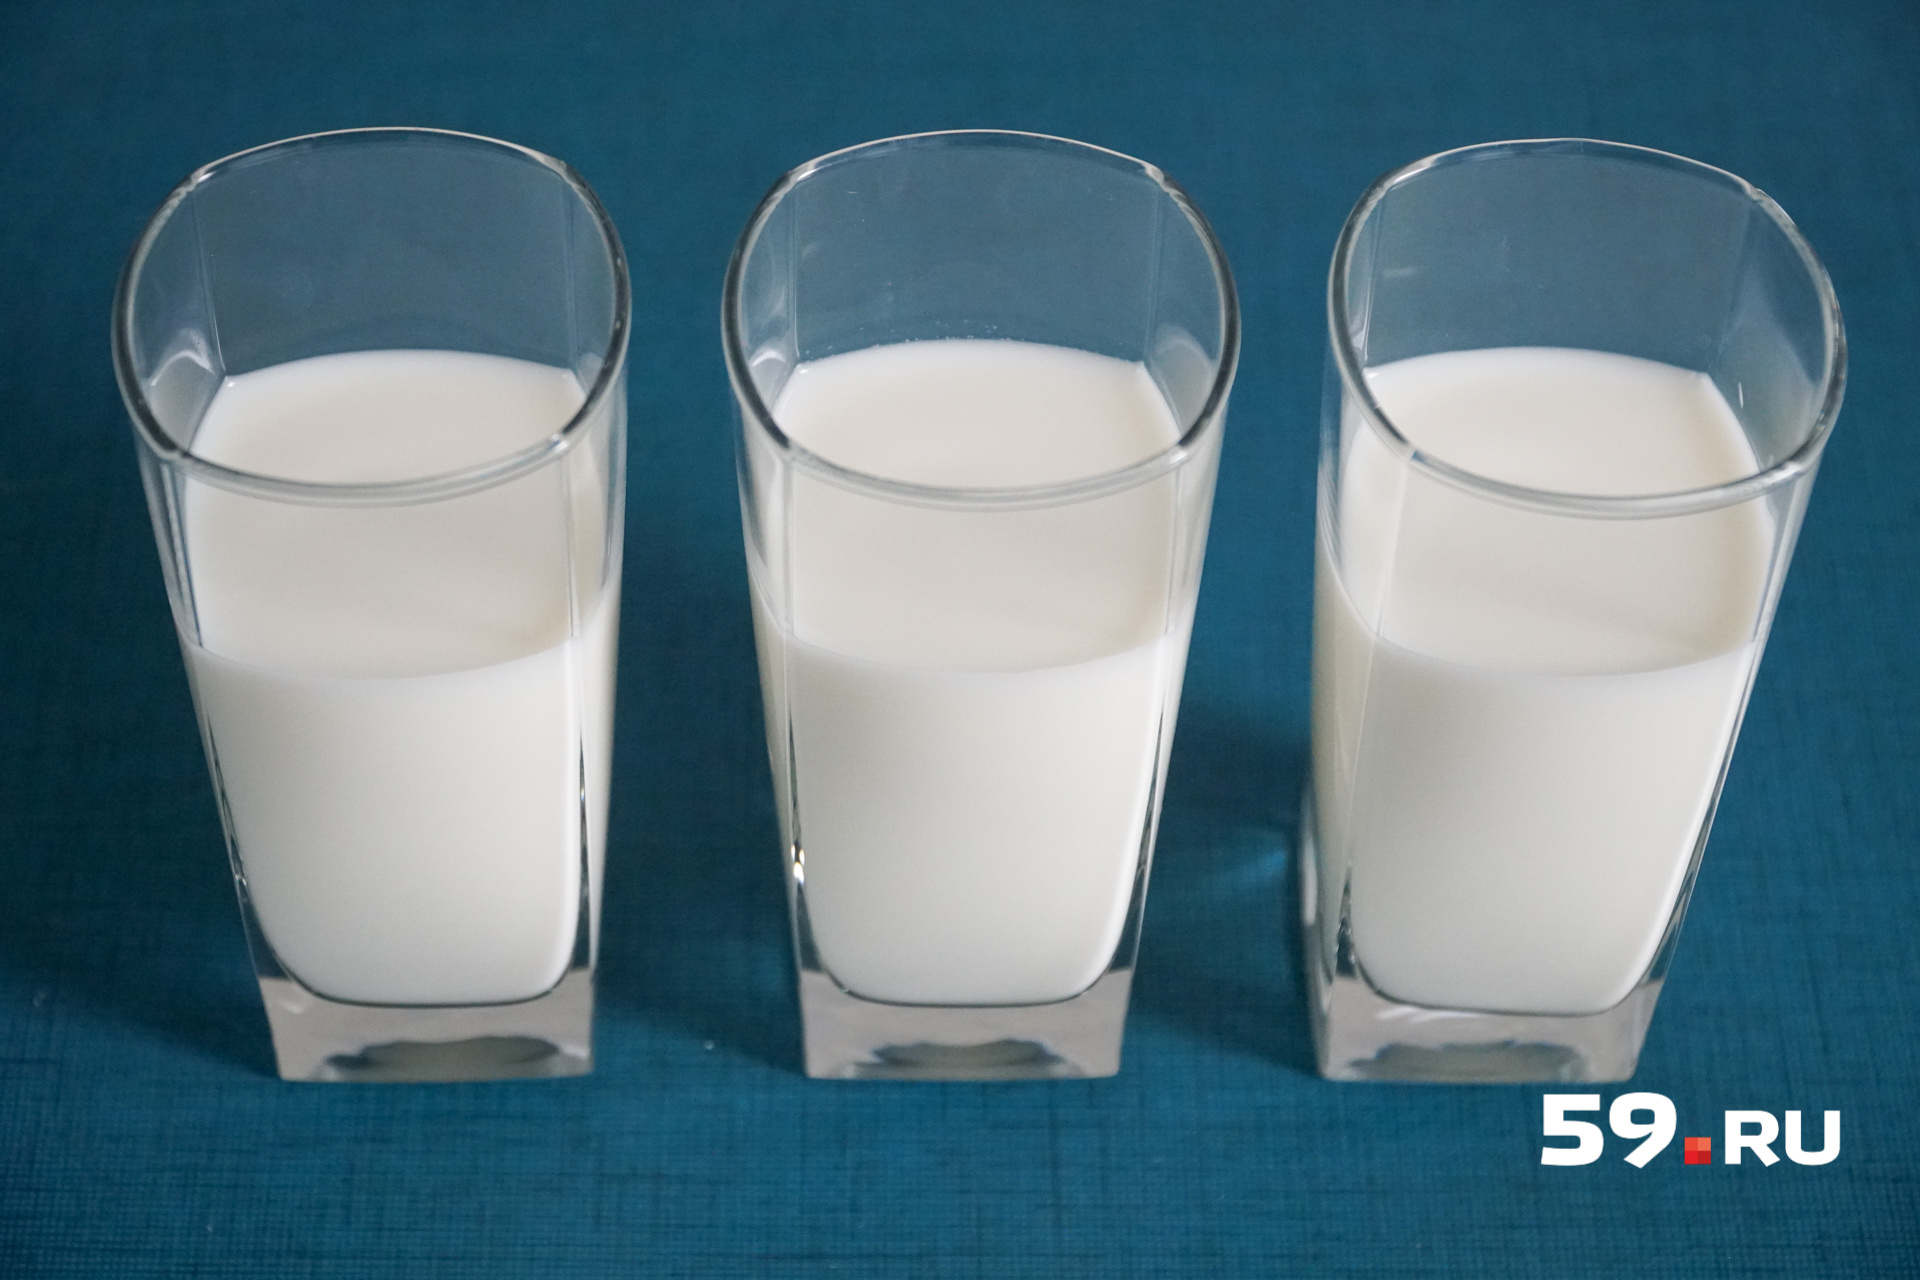 Польза и вред от молока для организма взрослого человека | Что такое  молочное лицо - 1 июня 2018 - 59.ru